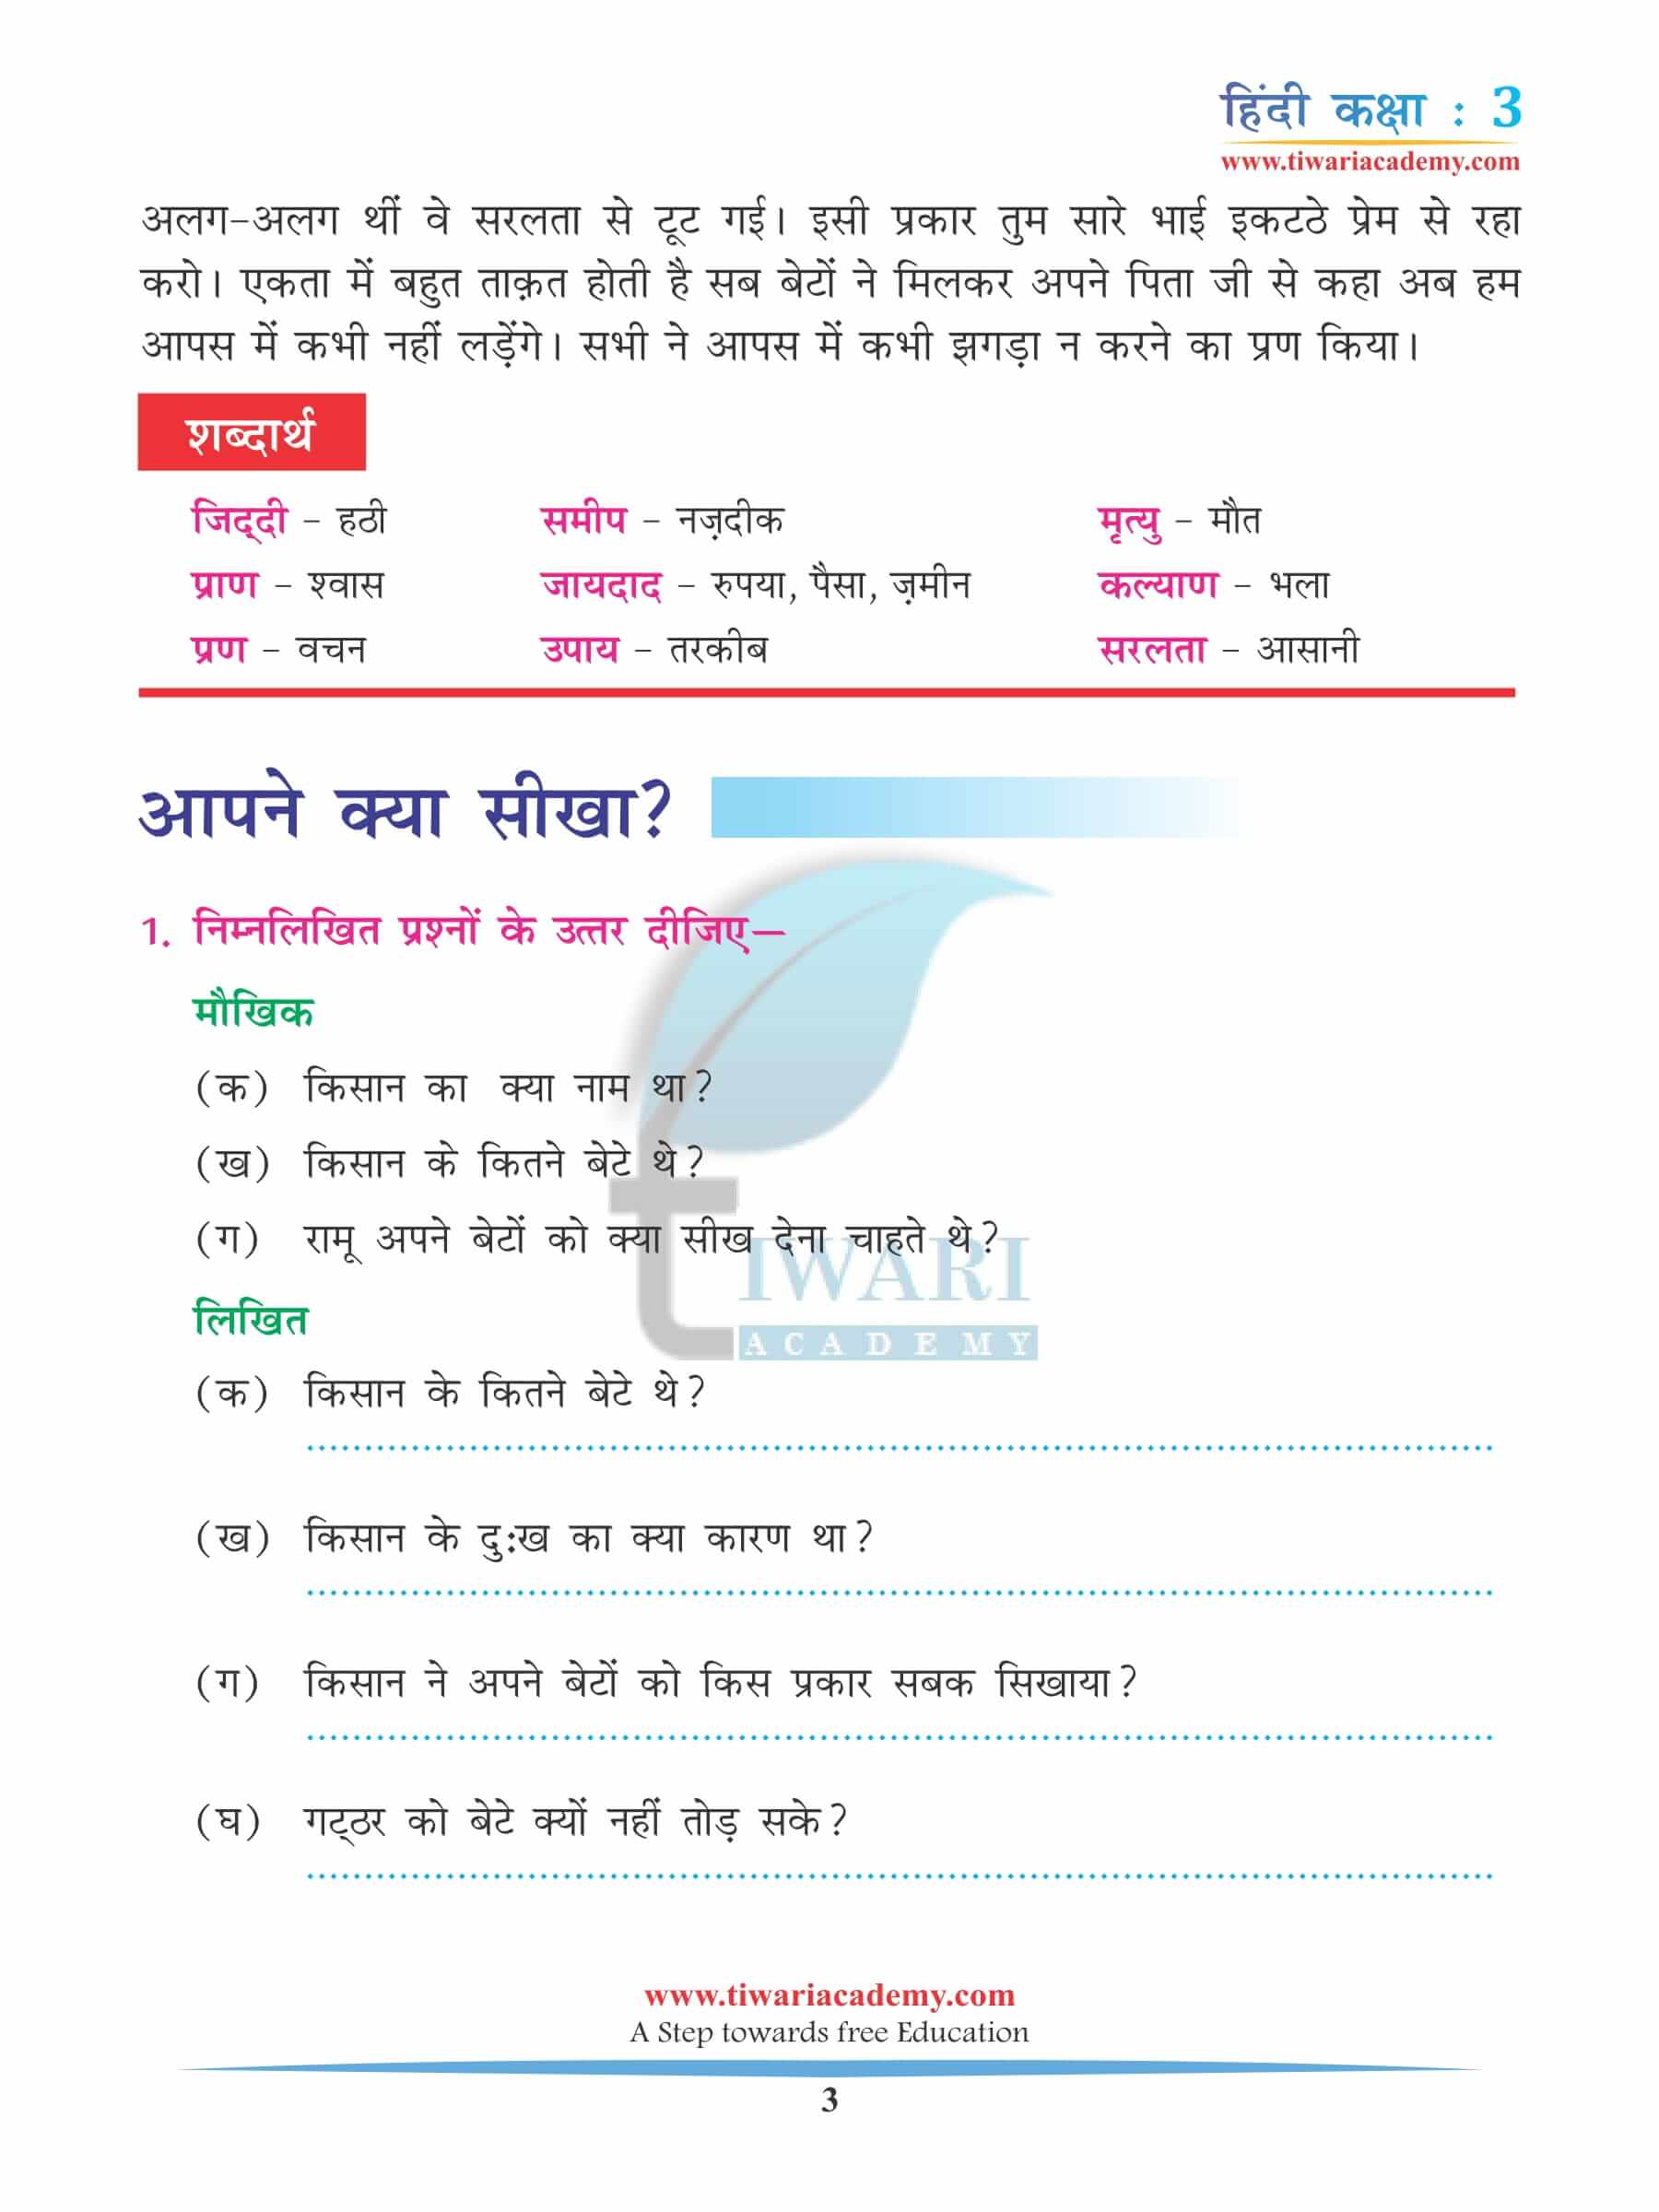 कक्षा 3 हिंदी अध्याय 3 अभ्यास